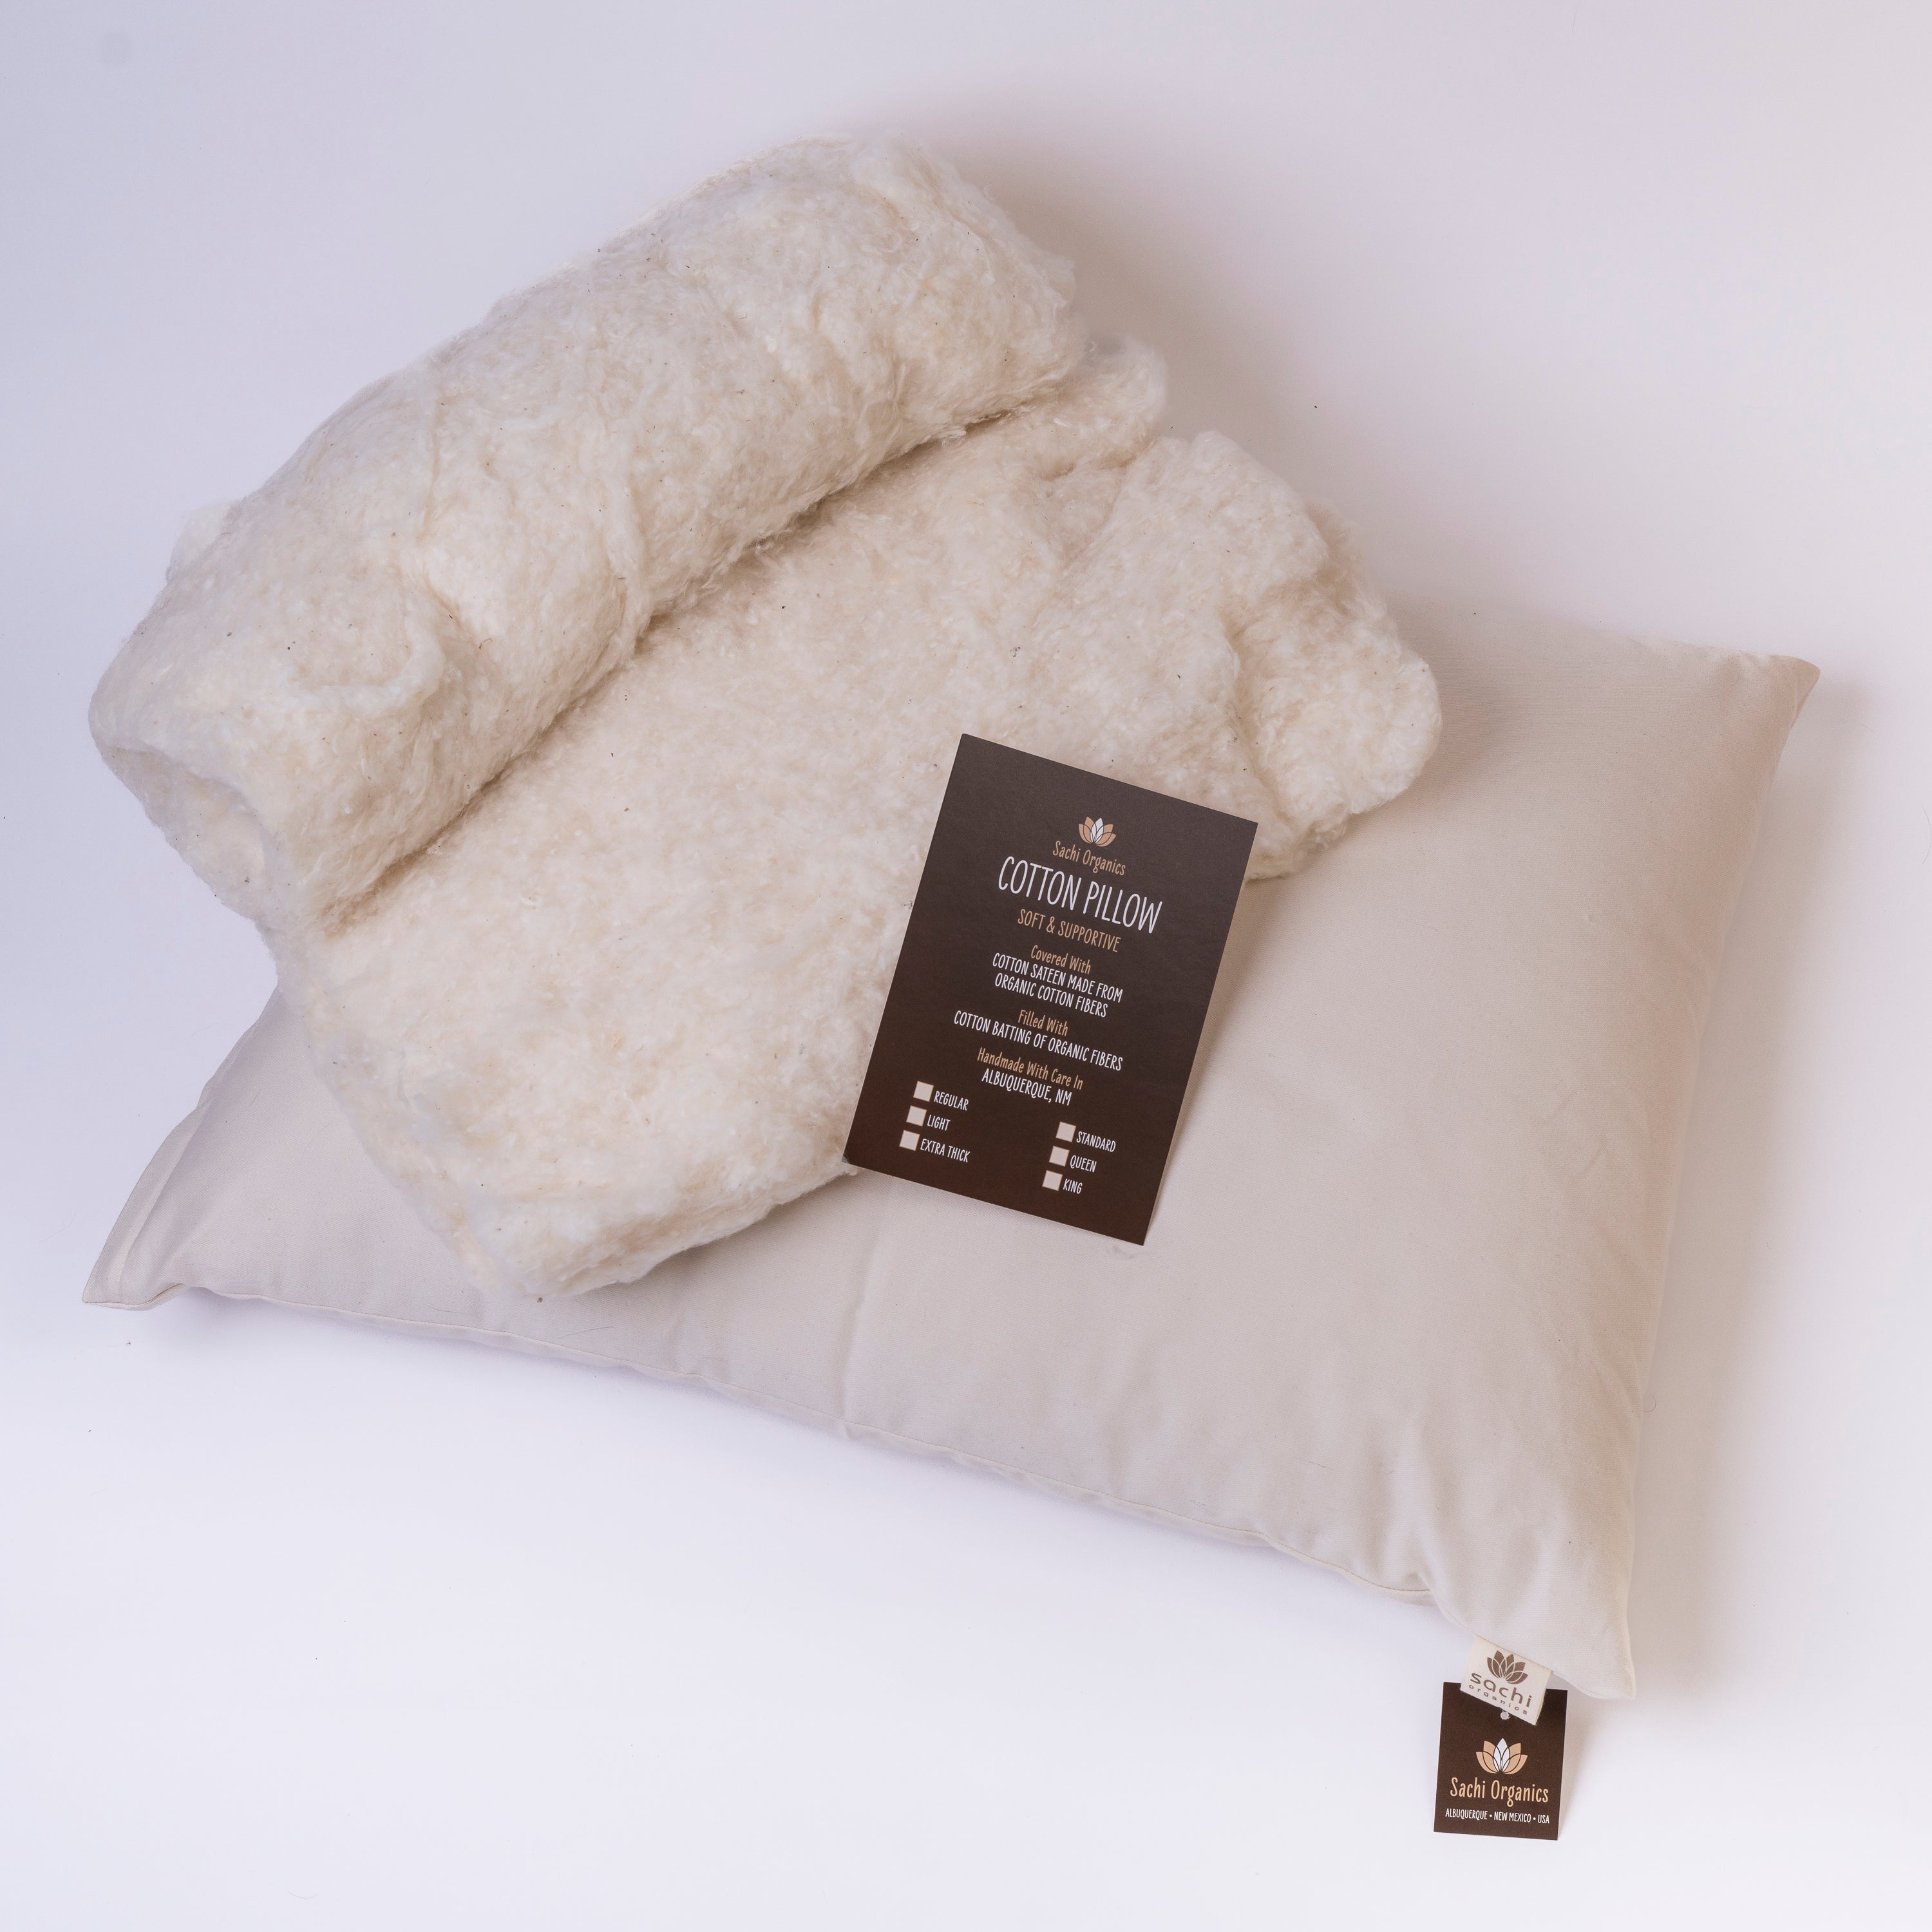 Pillow Insert - Batting Stuffing & Pillows